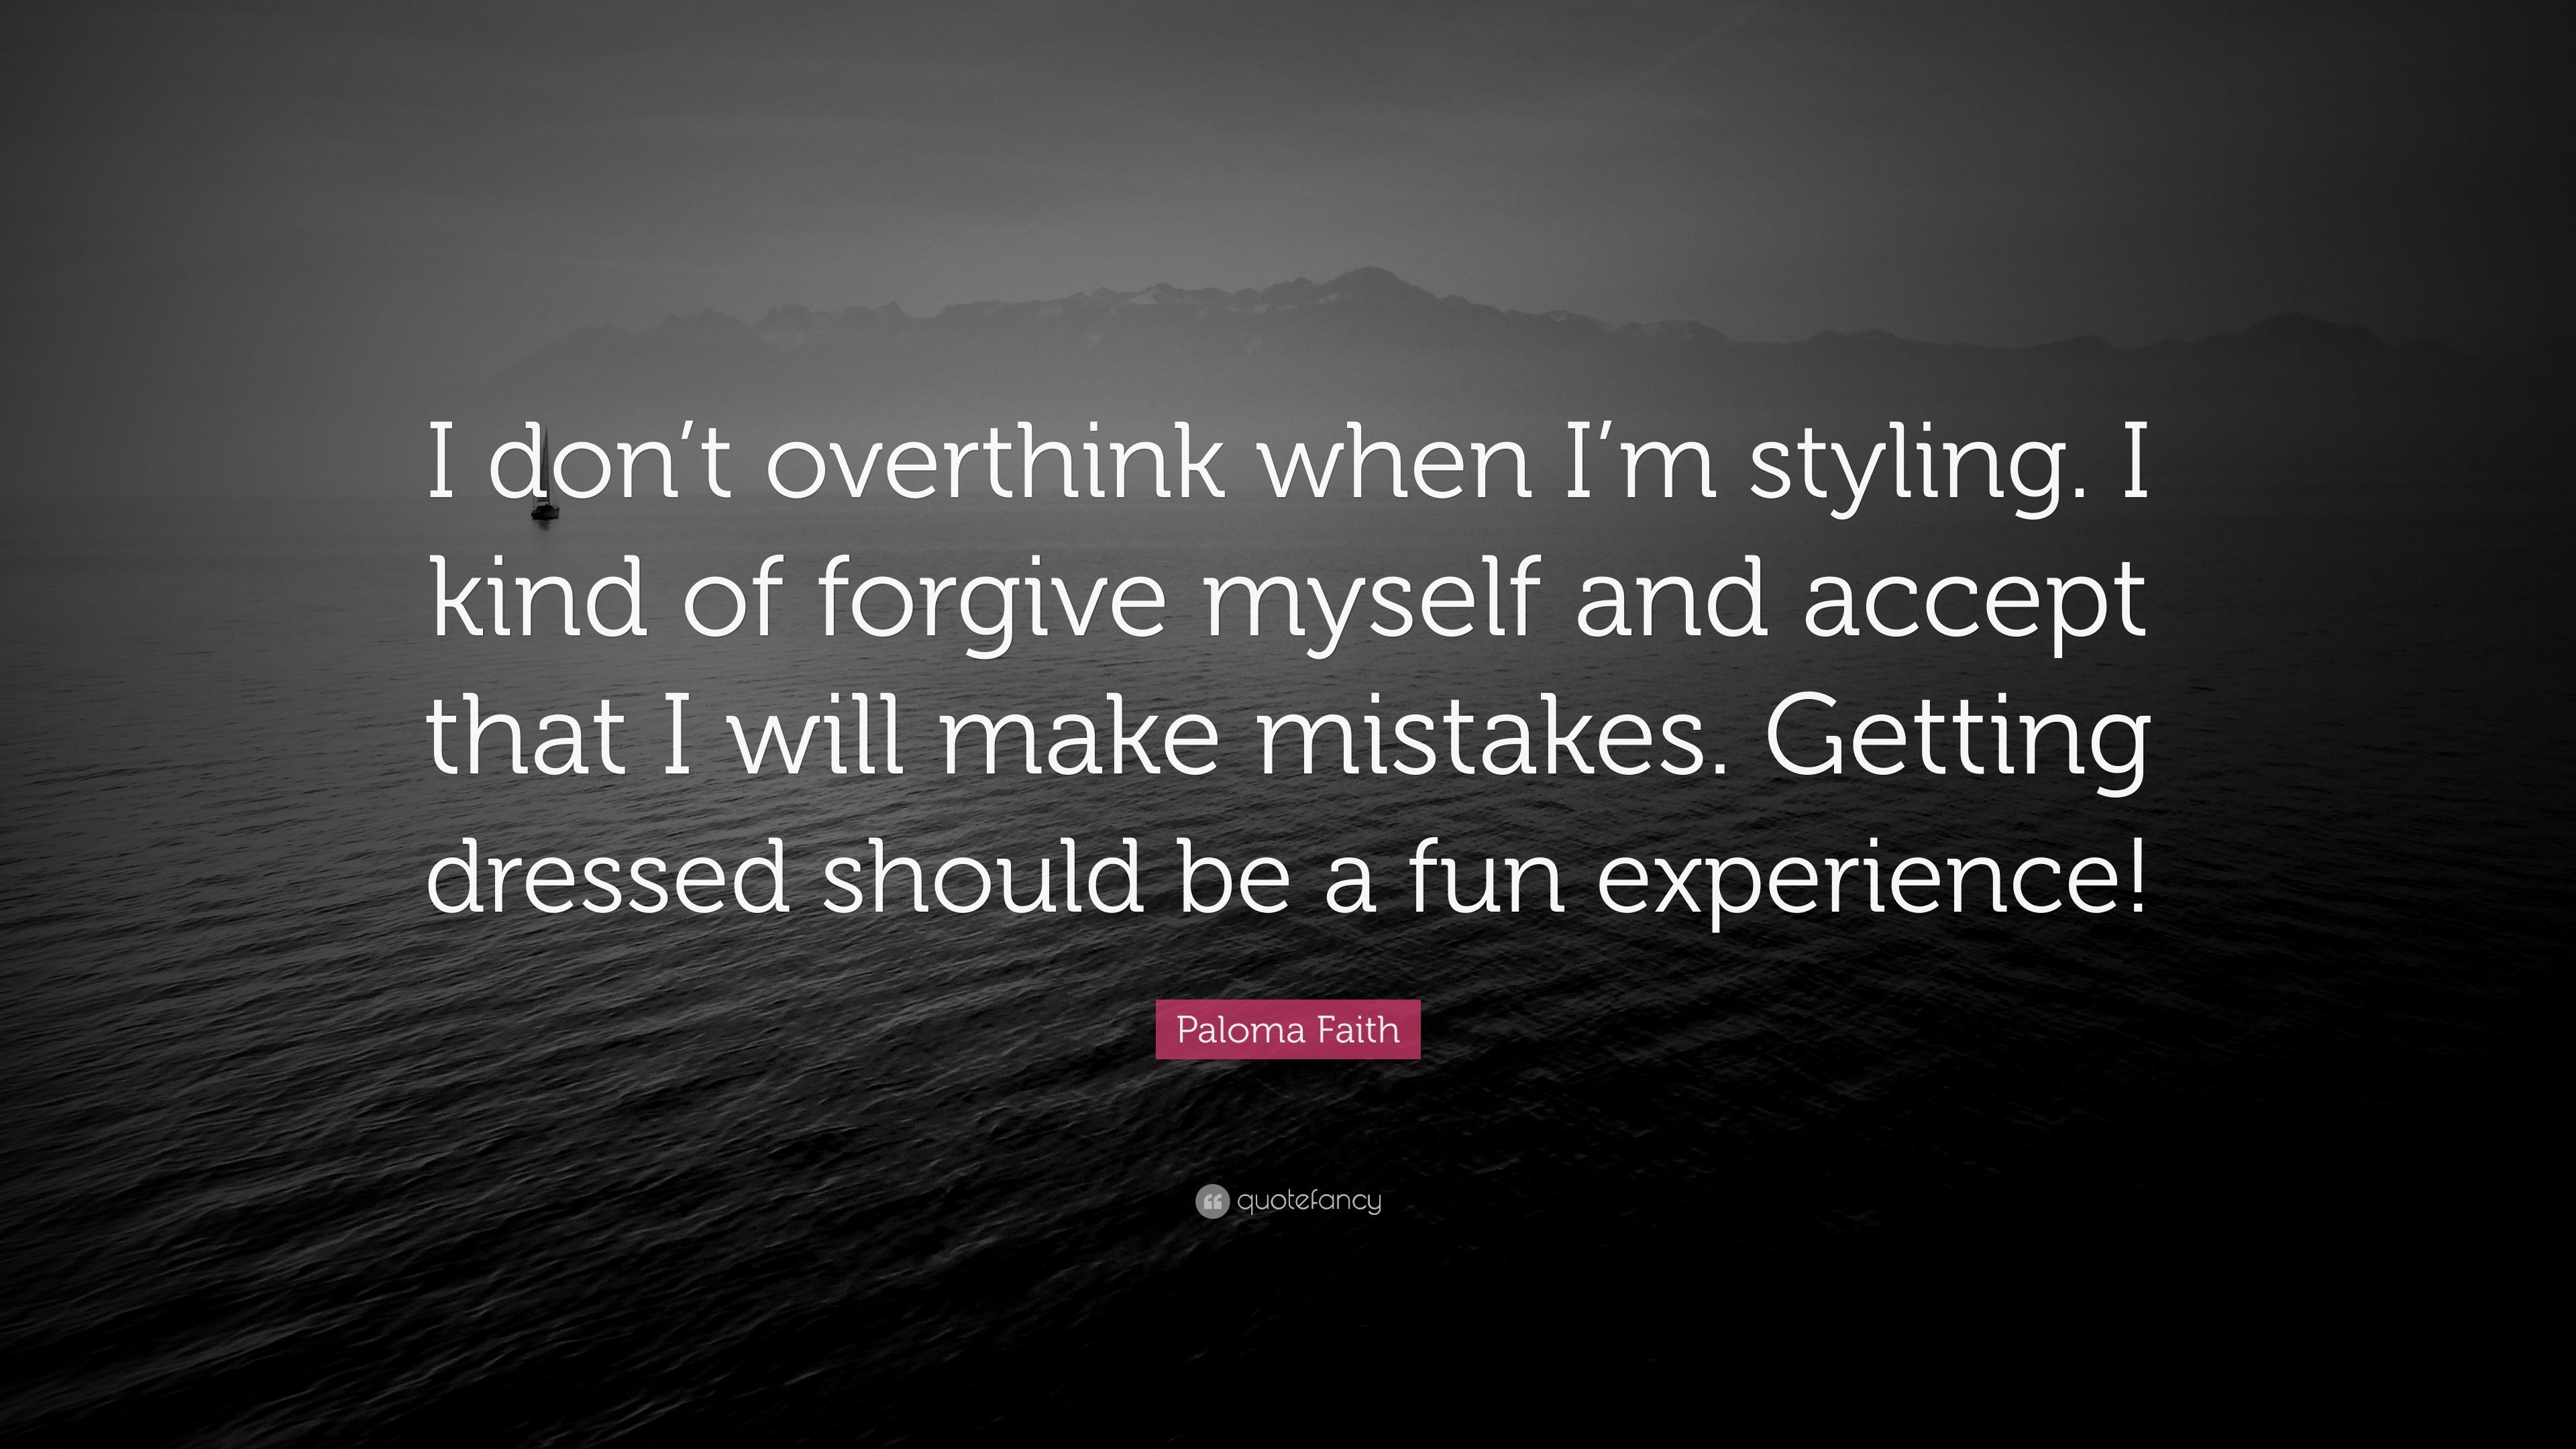 Paloma Faith Quote: “I don't overthink when I'm styling. I kind